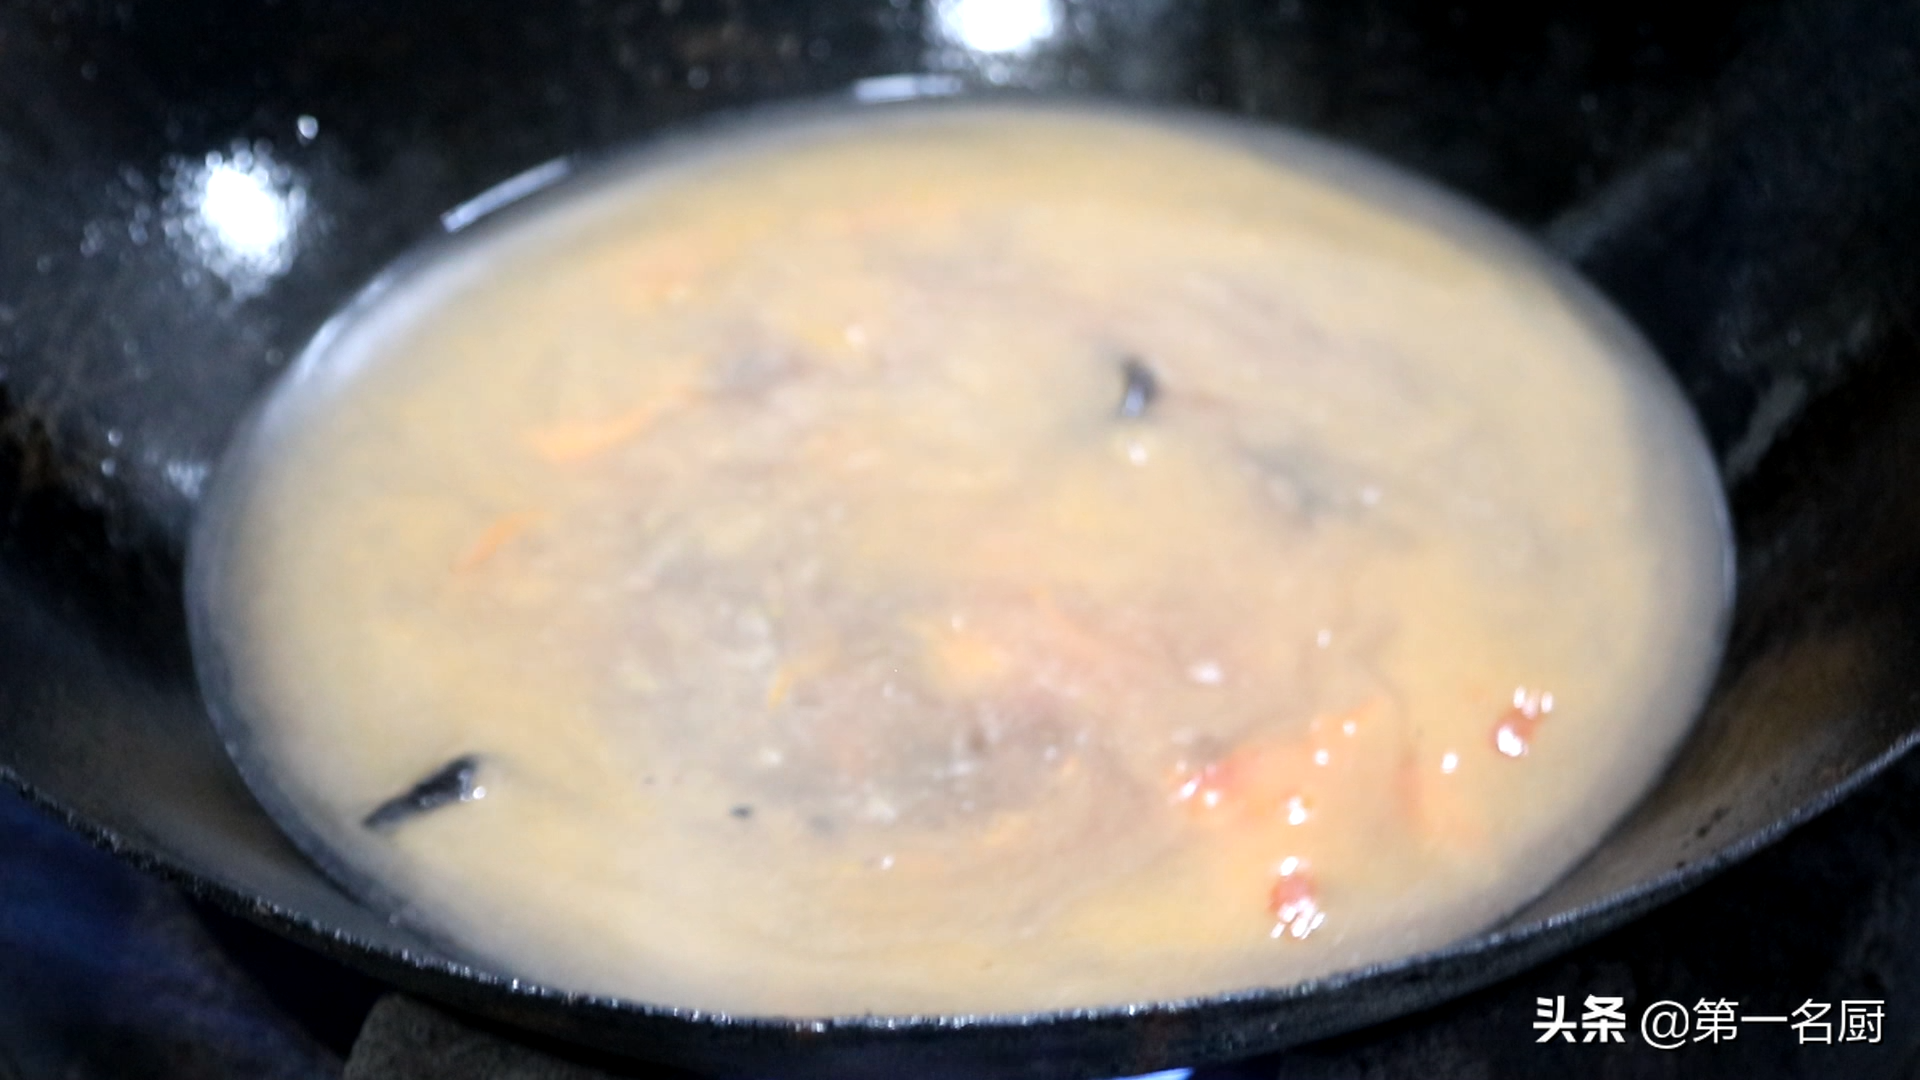 丸子汤的家常做法「丸子汤的家常做法」